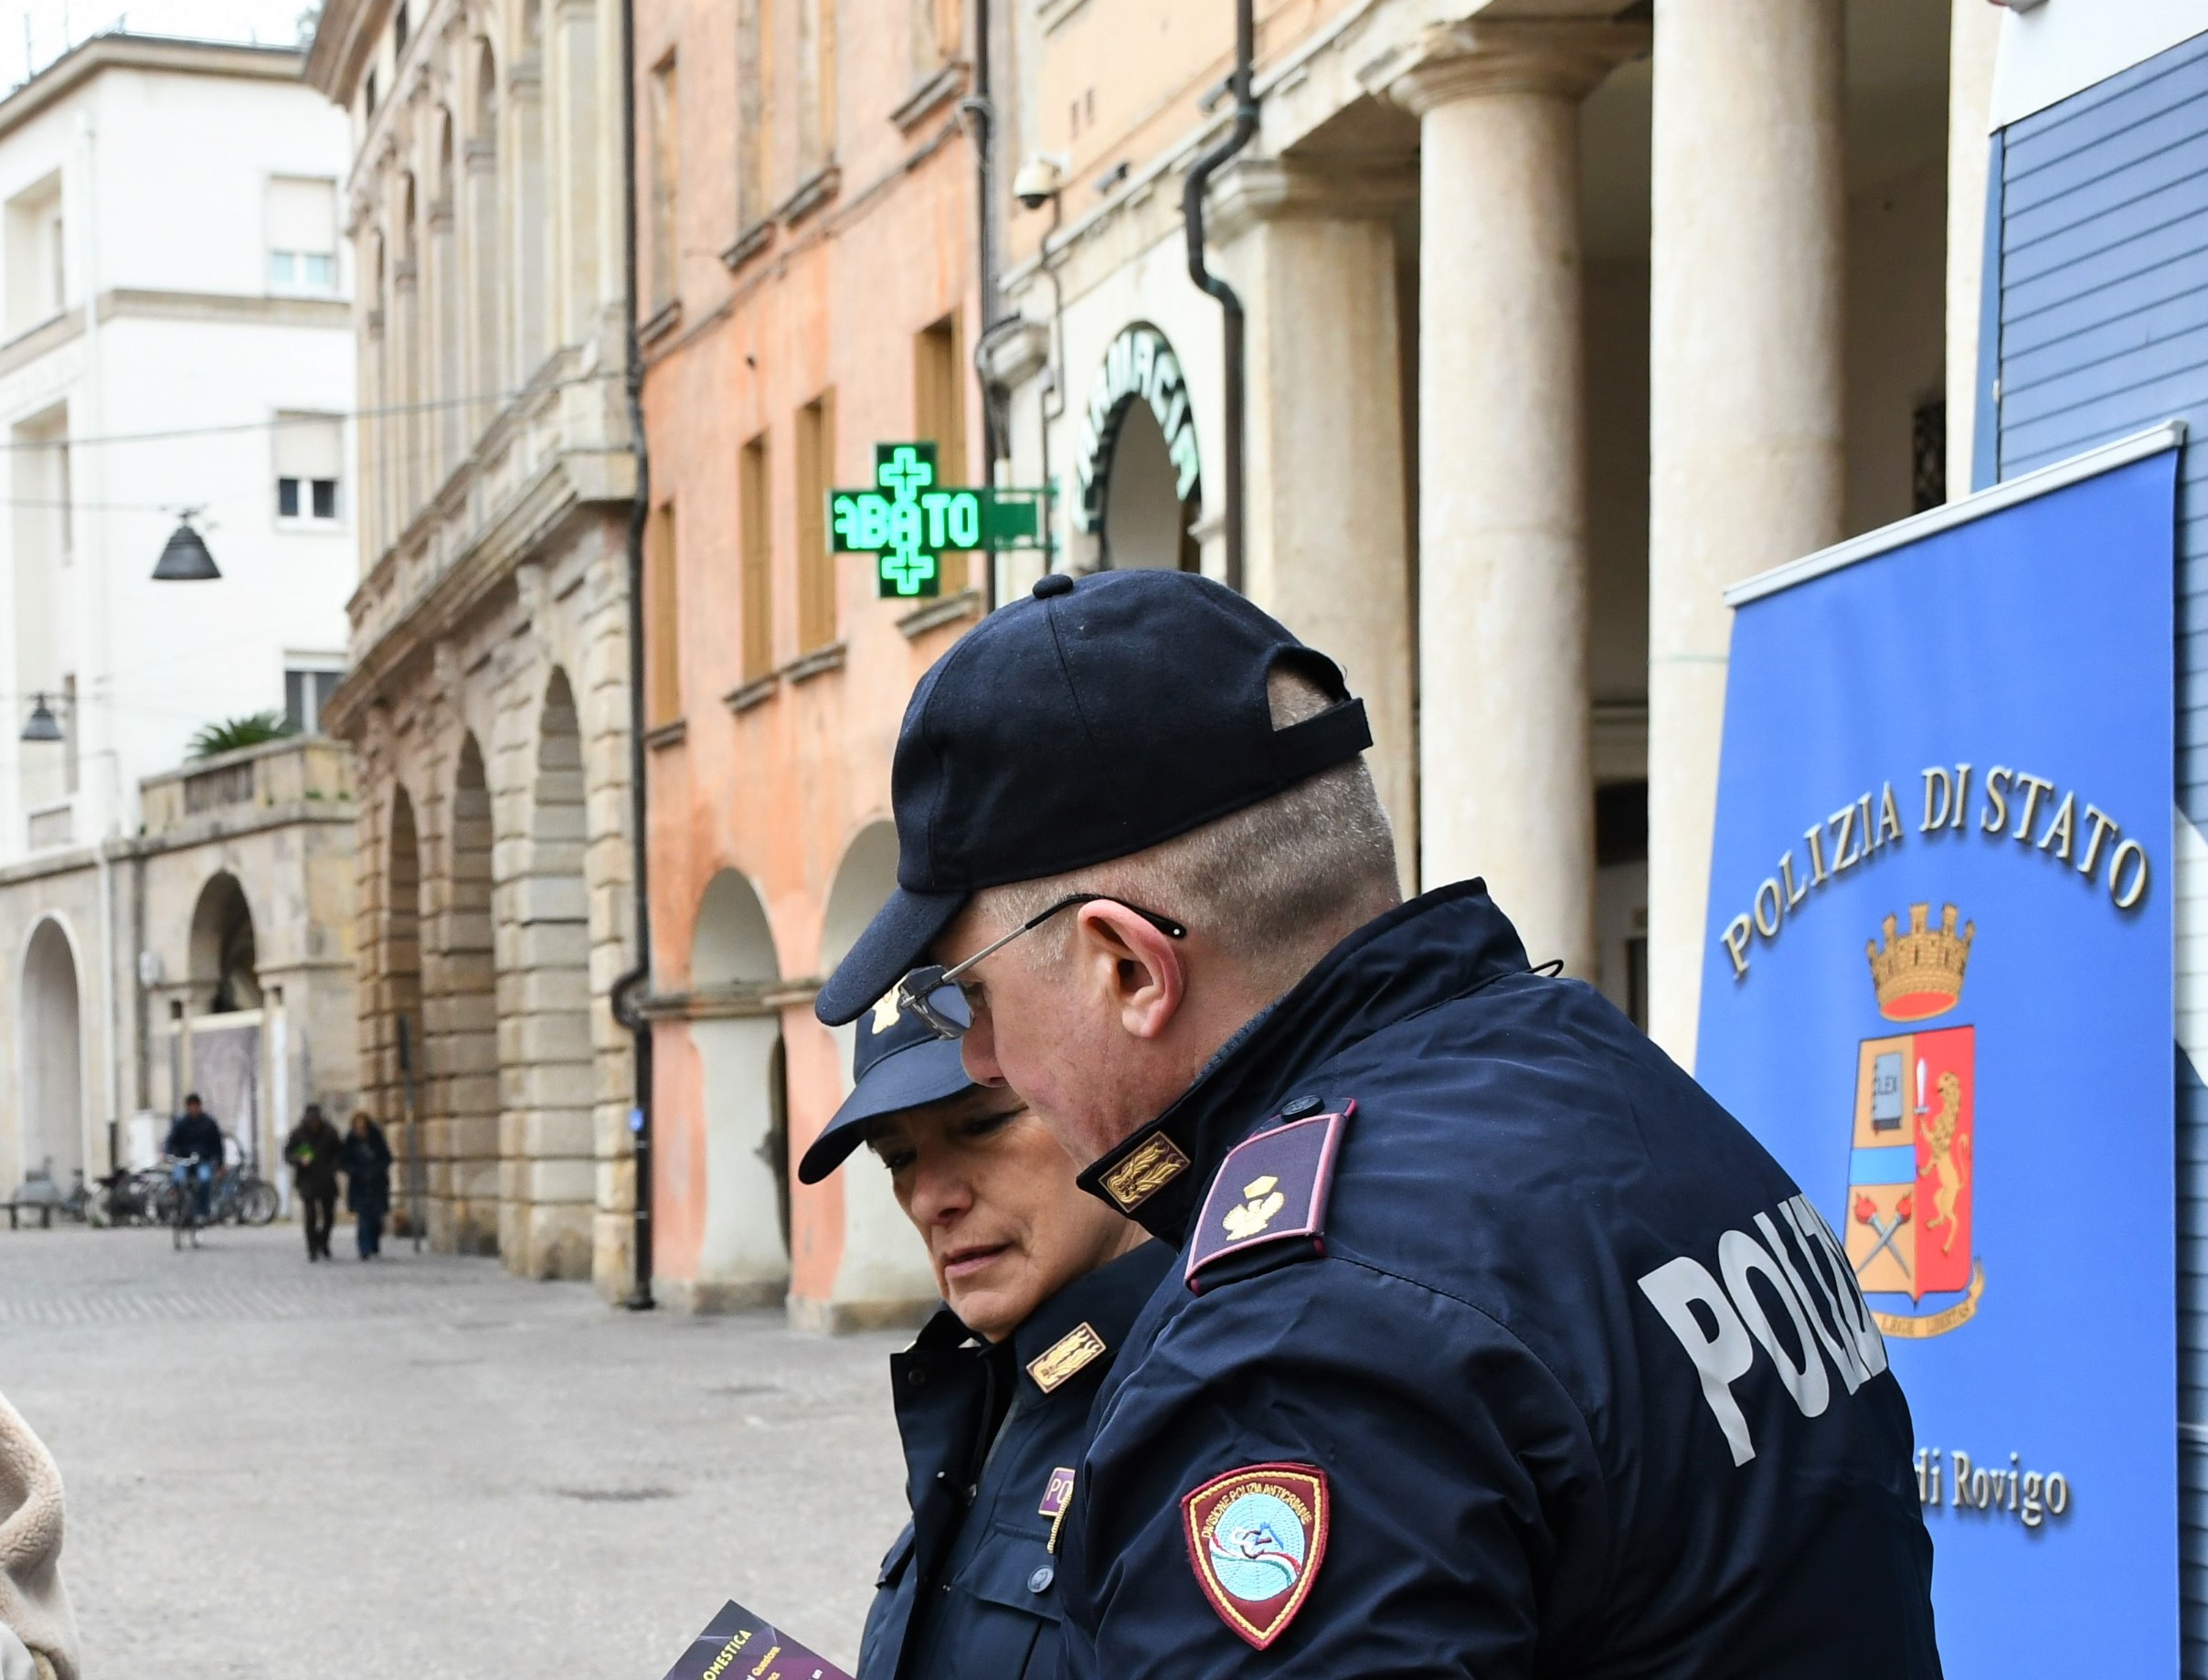 Polizia di Stato: prosegue l’attività della Divisione Anticrimine e dell’Ufficio Immigrazione della Questura di Rovigo